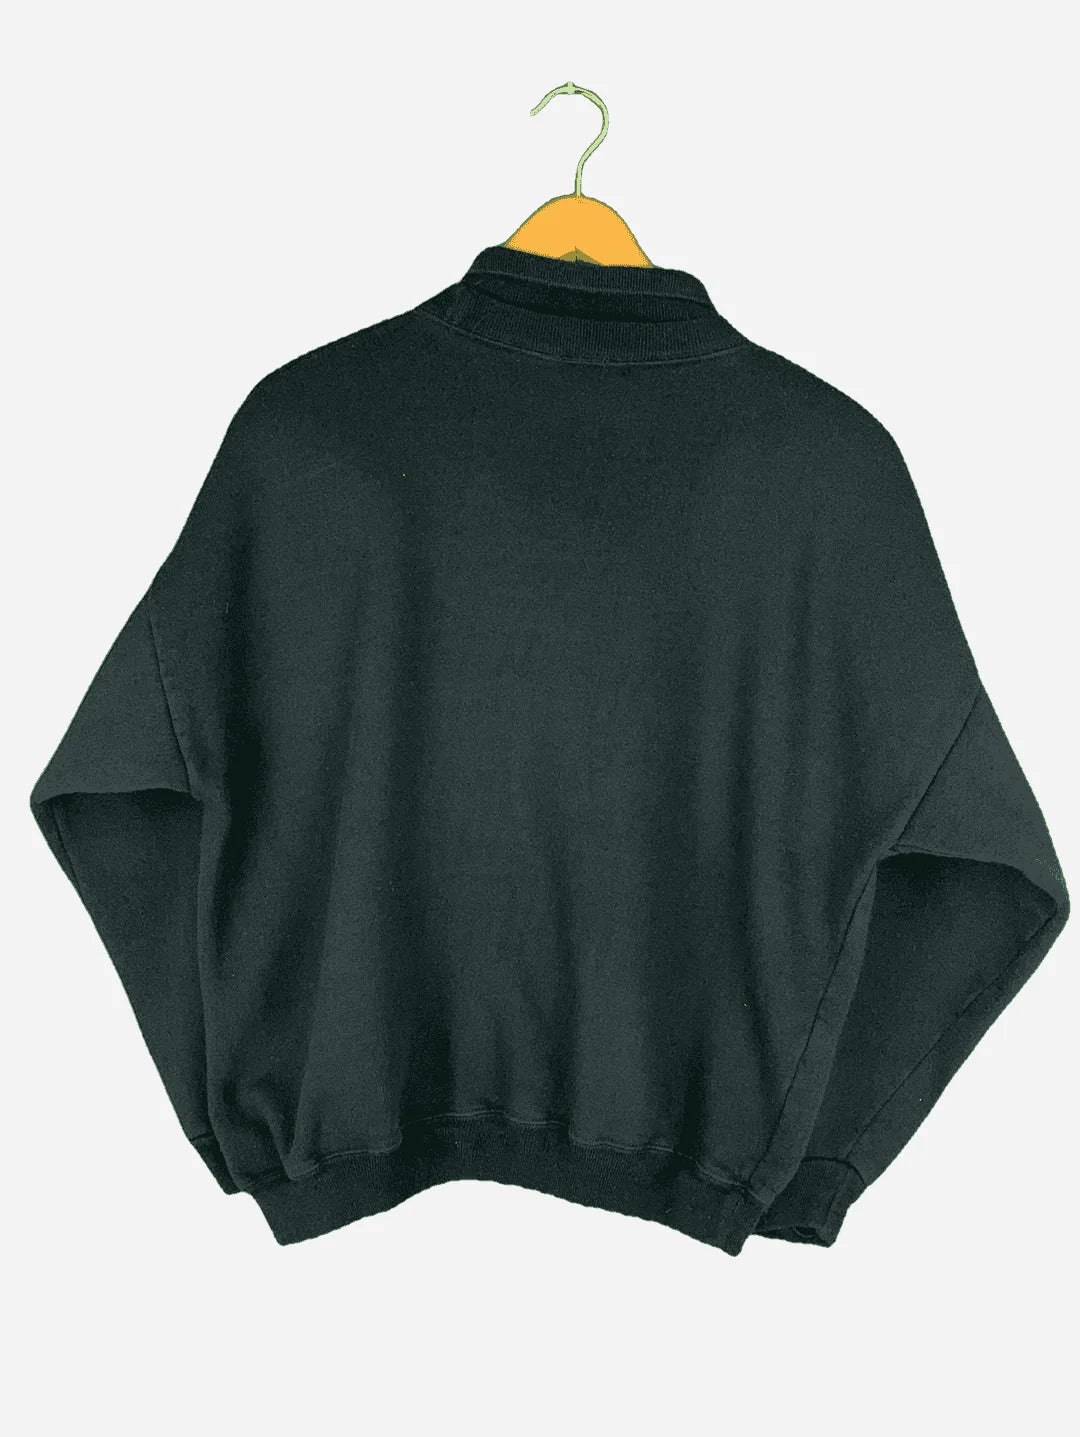 Acorn „Rotkehlchen“ Sweater (XS)